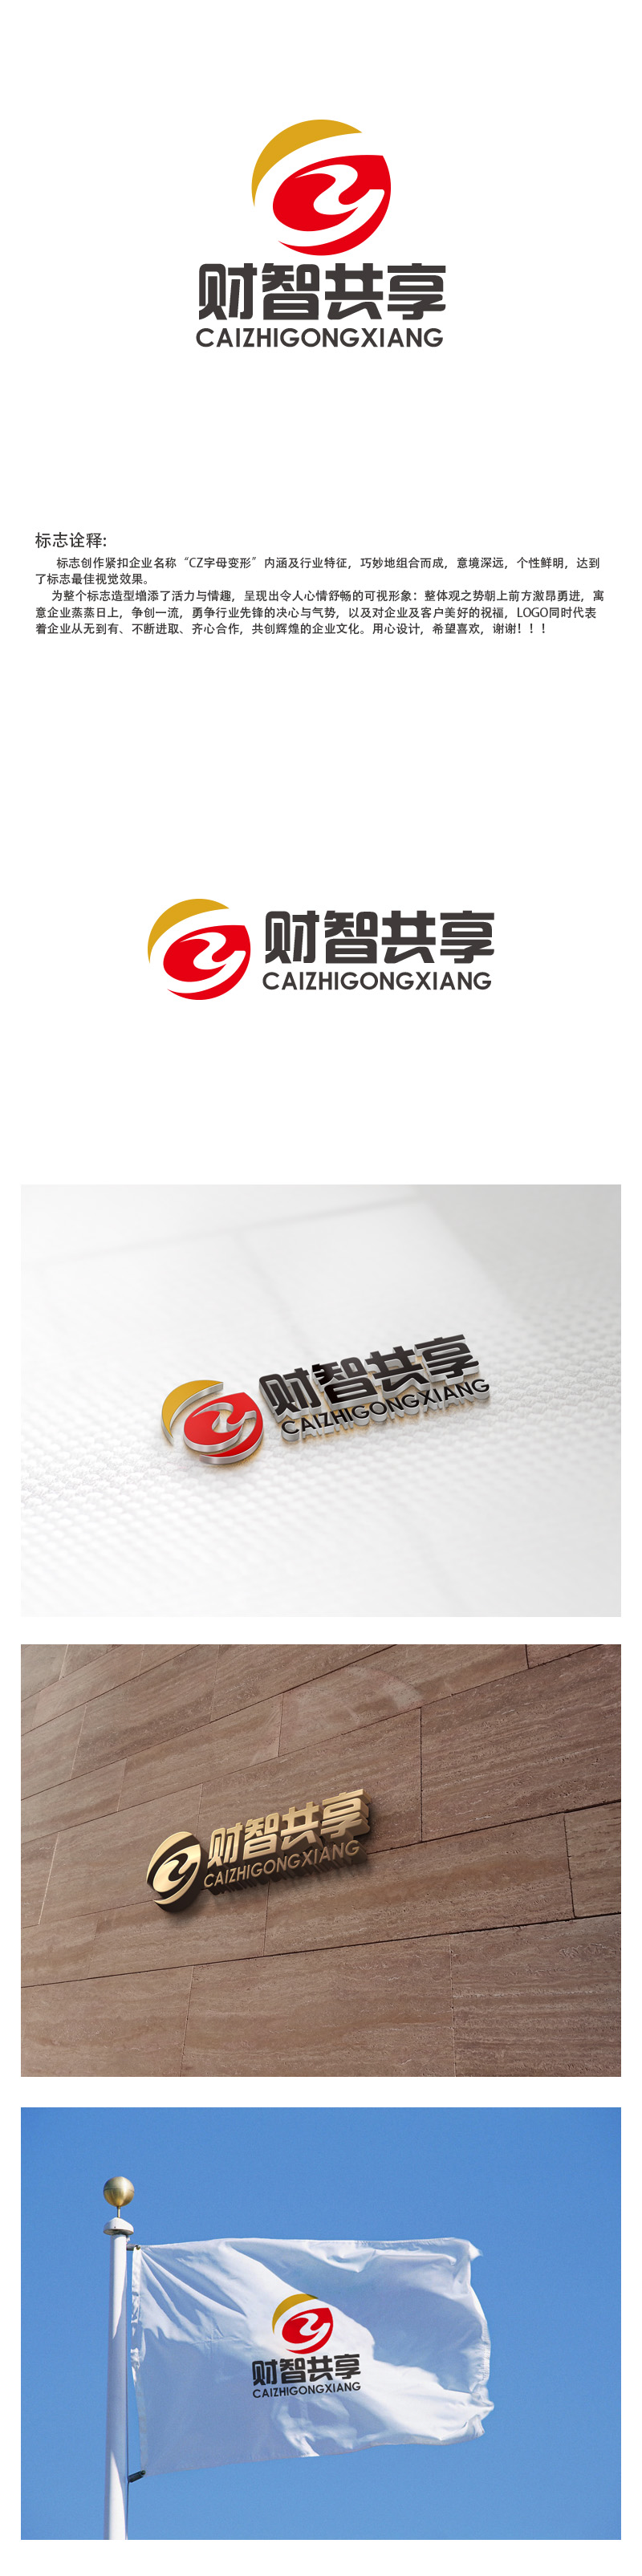 秦晓东的财智共享（北京）技术服务有限公司logo设计